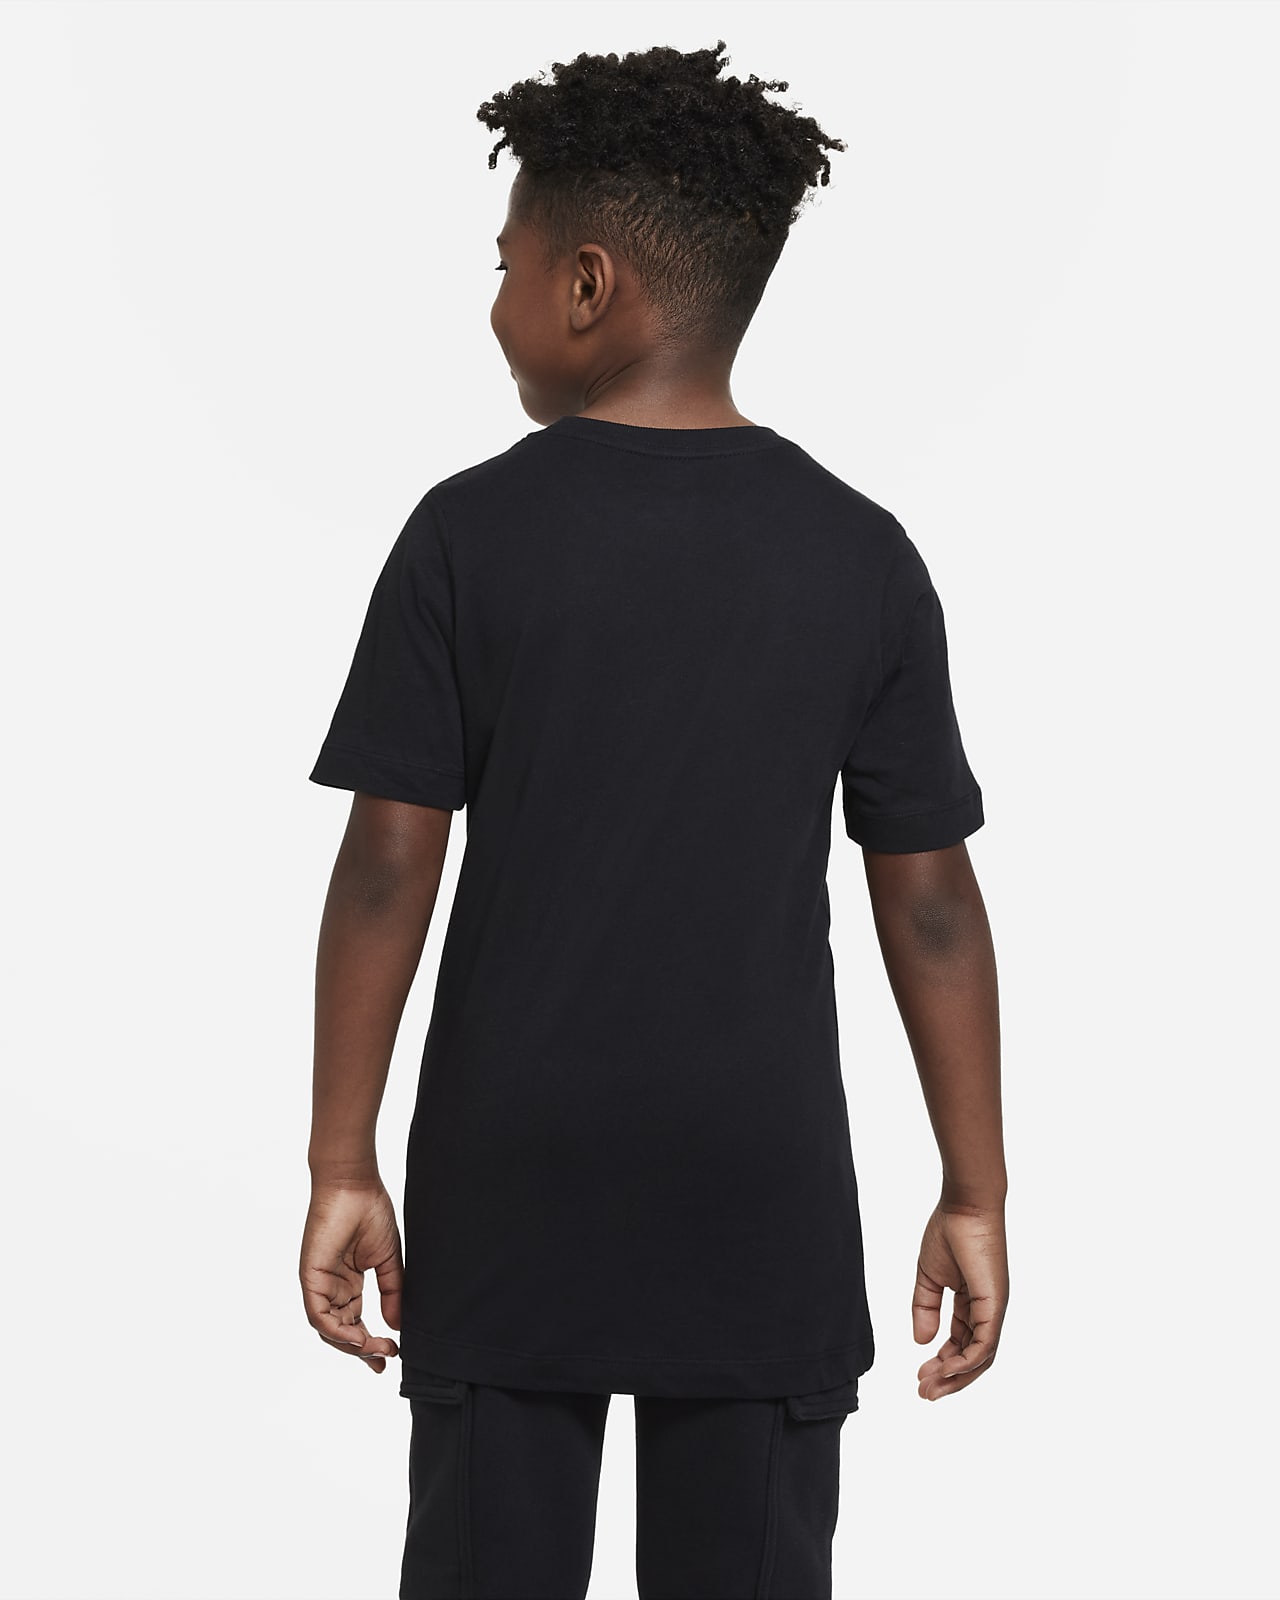 Nike公式 パリ サンジェルマン スウッシュ ジュニア サッカー Tシャツ オンラインストア 通販サイト